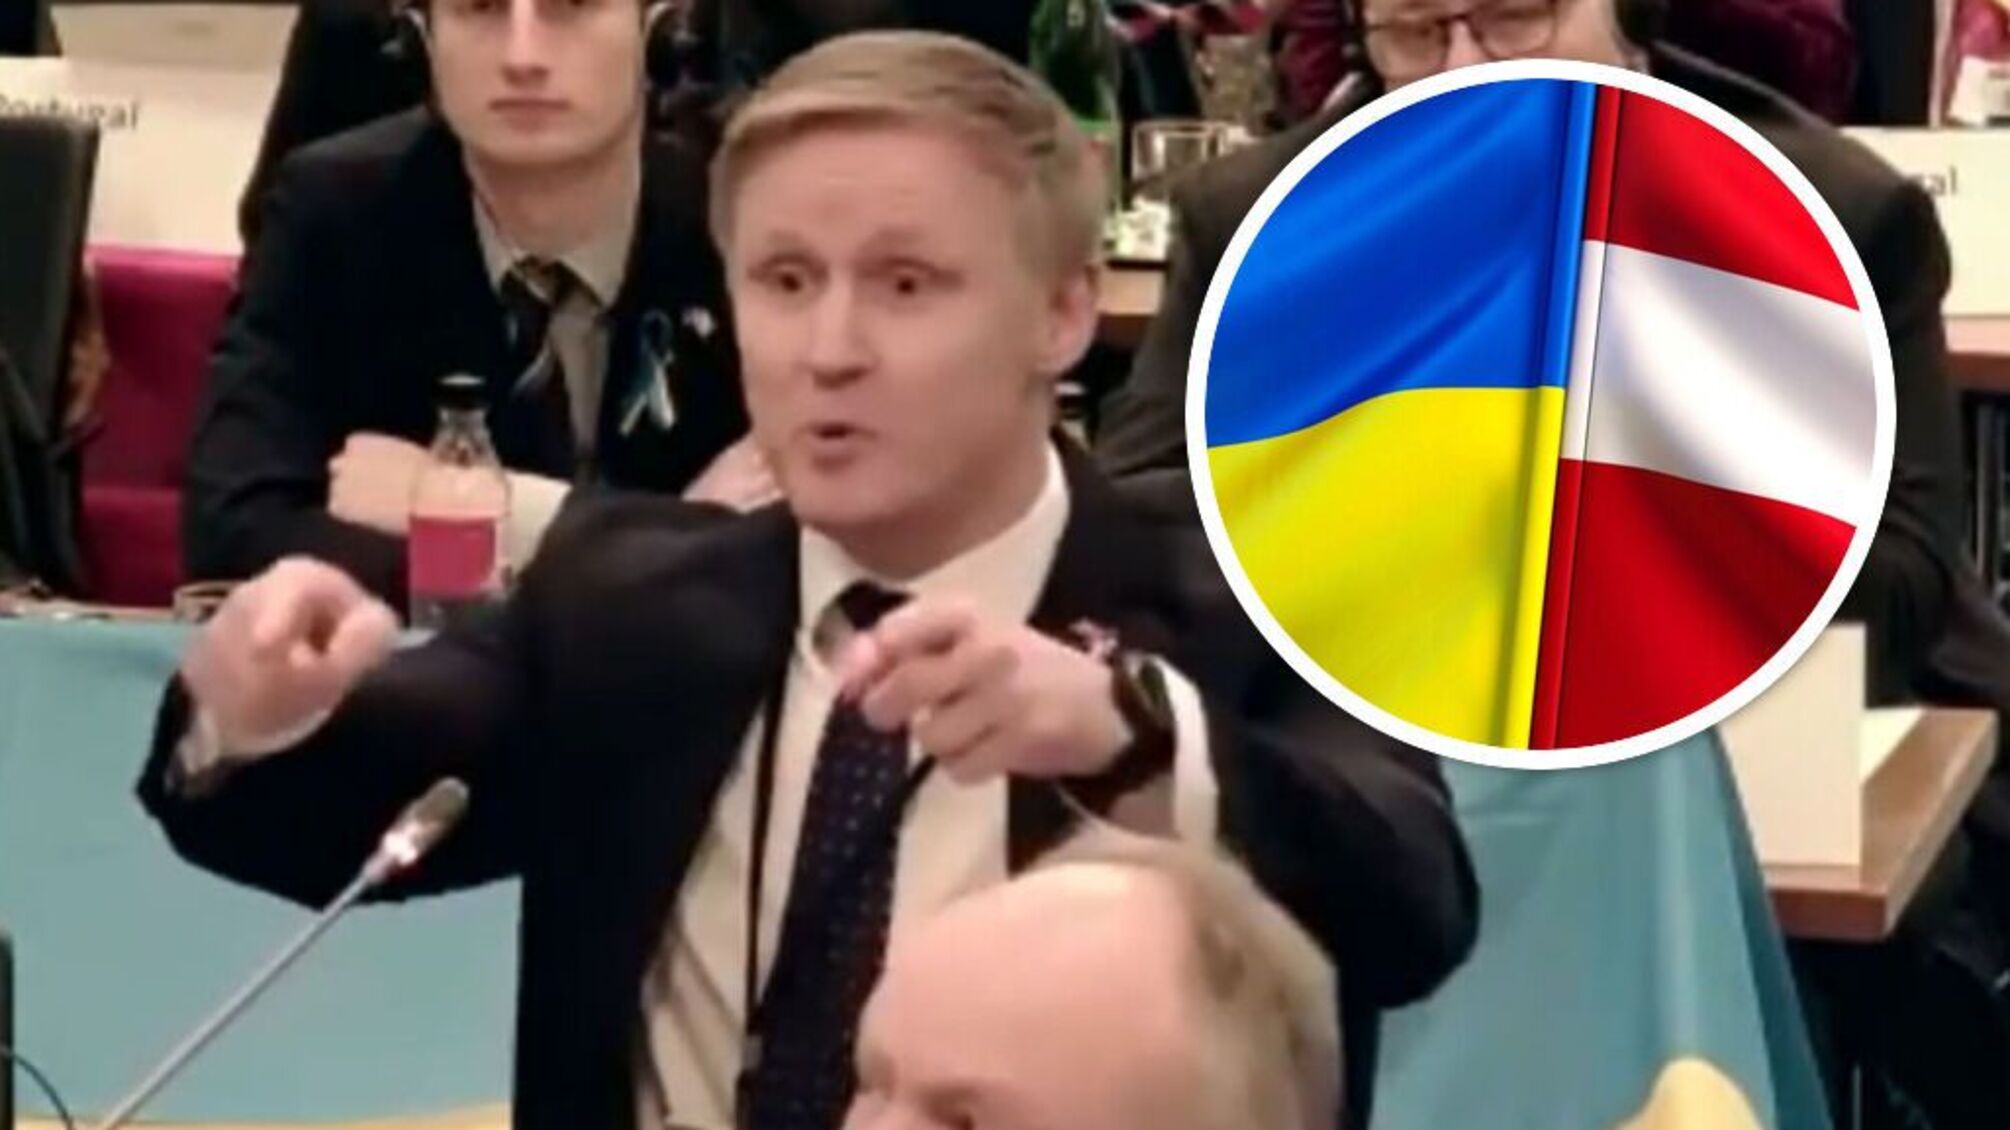 Снова брань между политиками: латвийский депутат отправил российскую делегацию 'за кораблем' (видео)